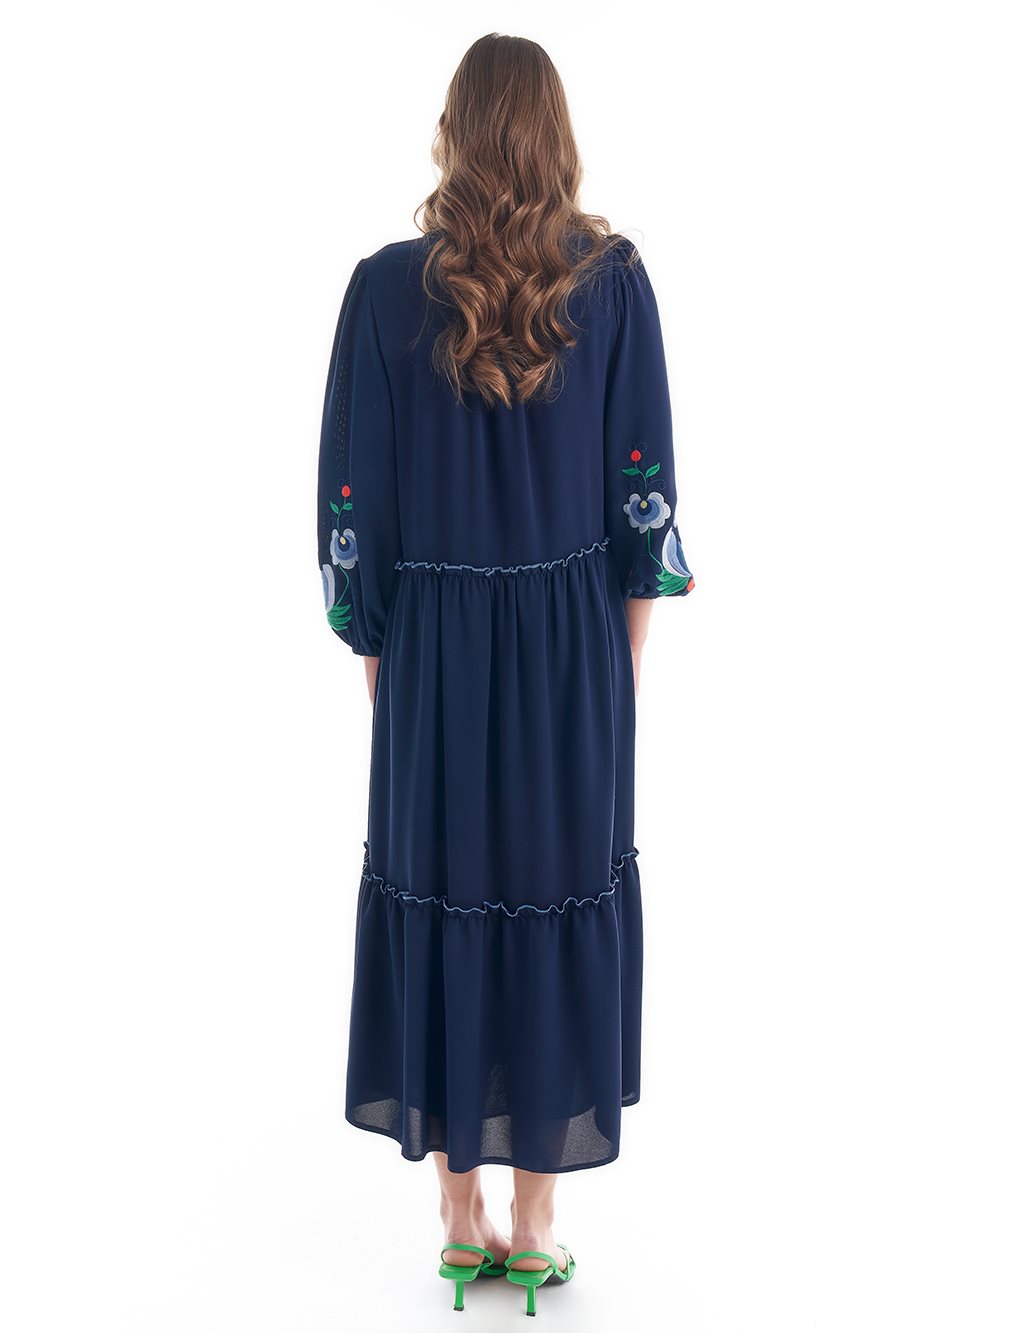 Embroidered Tassel Detailed Layered Dress Dark Navy Blue